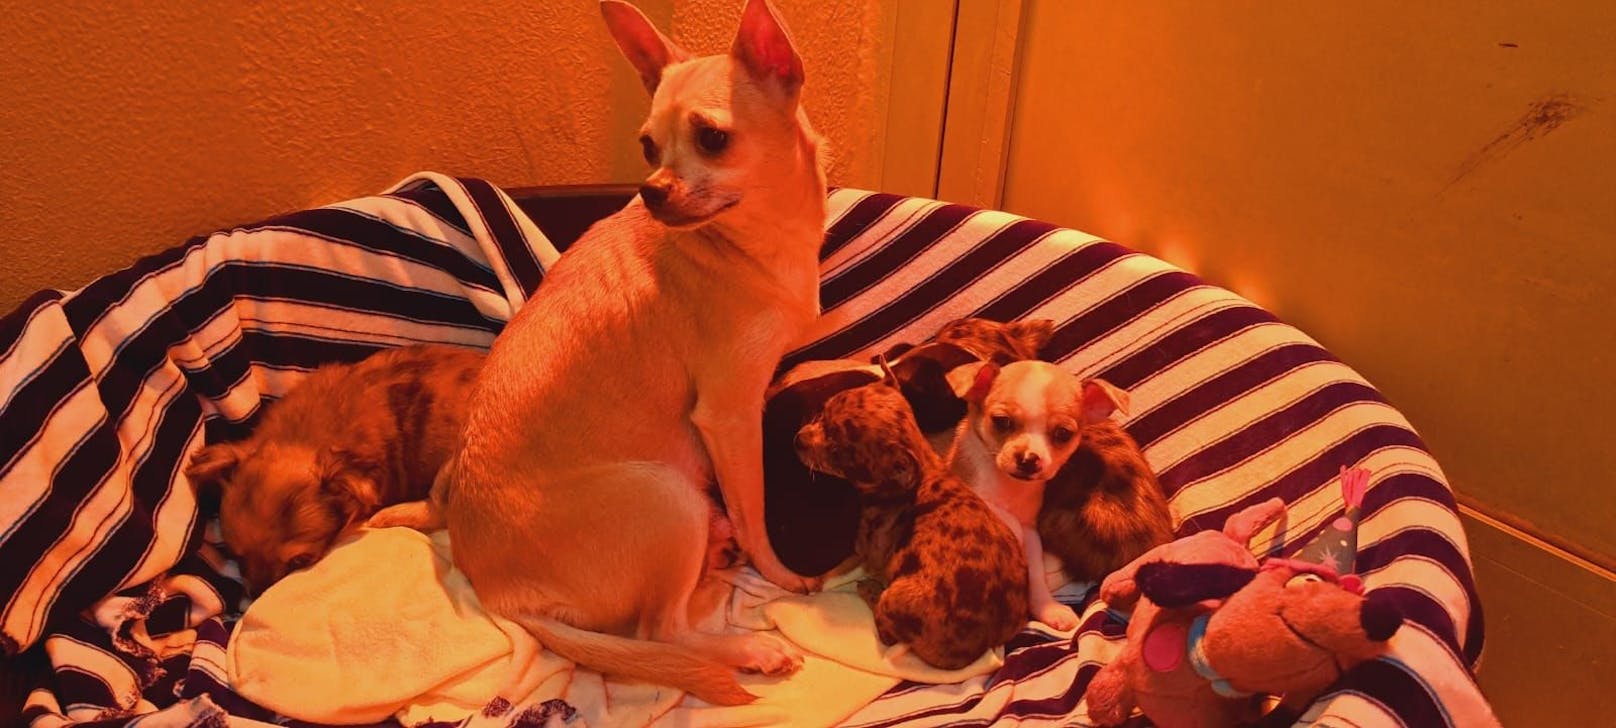 Die Chihuahua-Dame dürfte nicht die Mutter der Welpen sein.